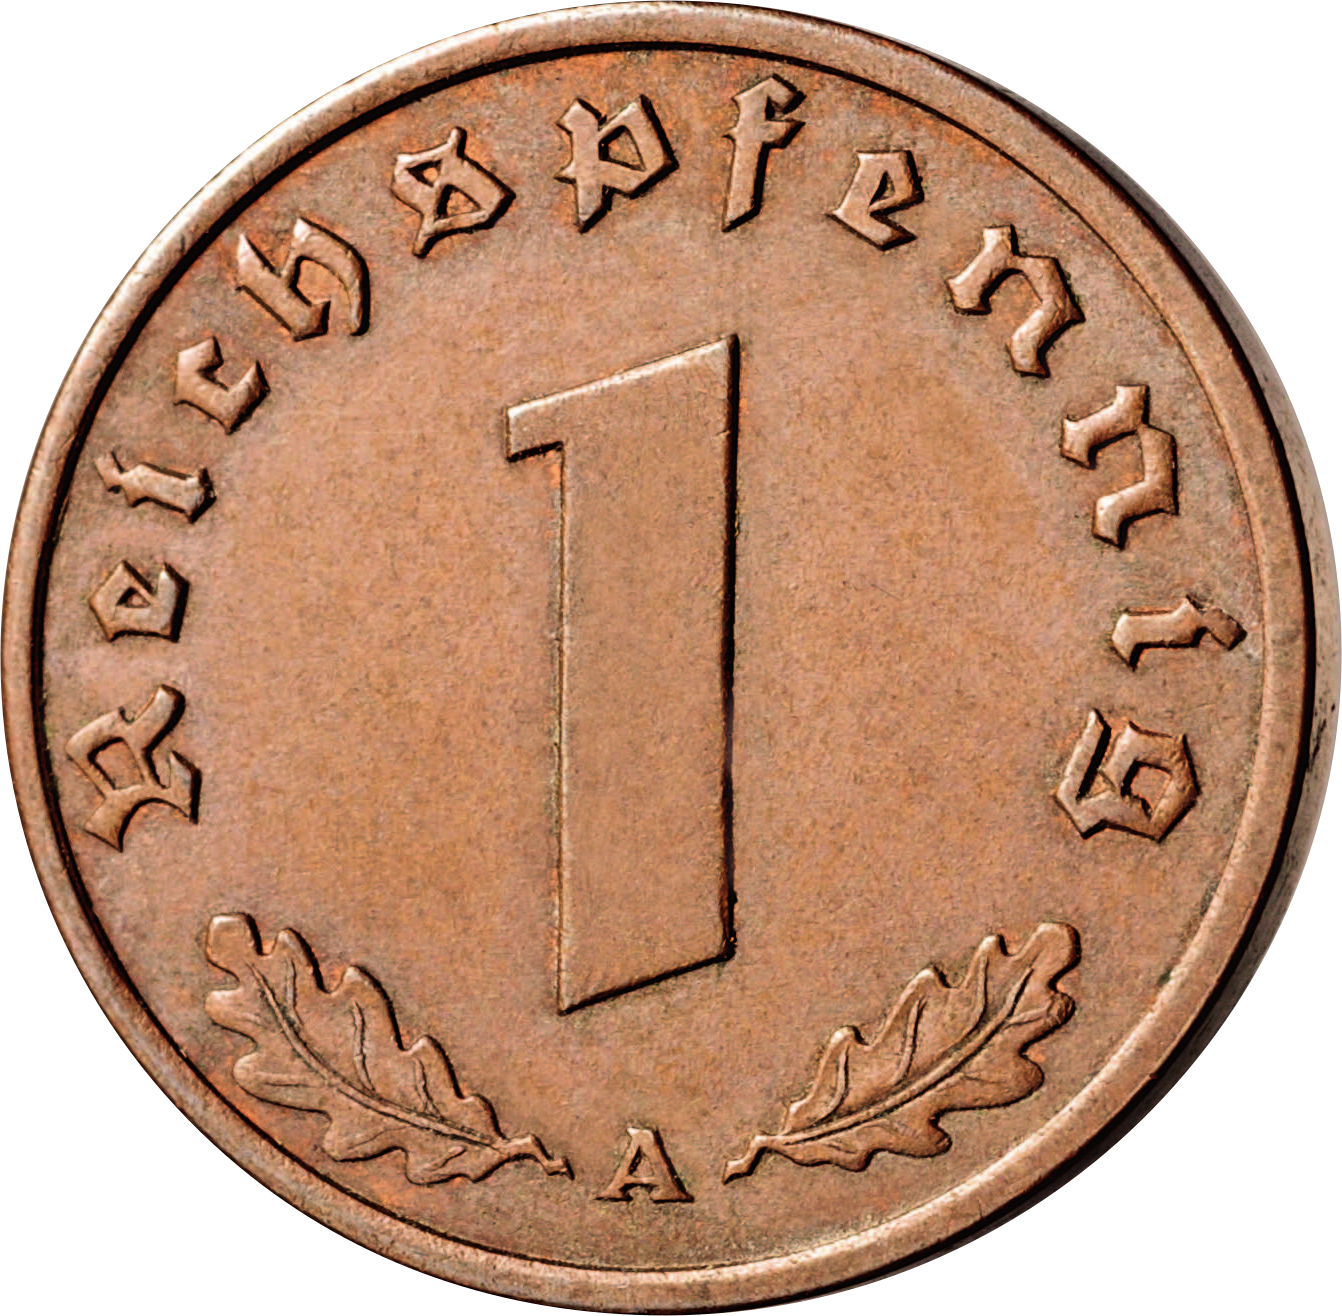 Drittes Reich 1 Reichspfennig 1936-1940